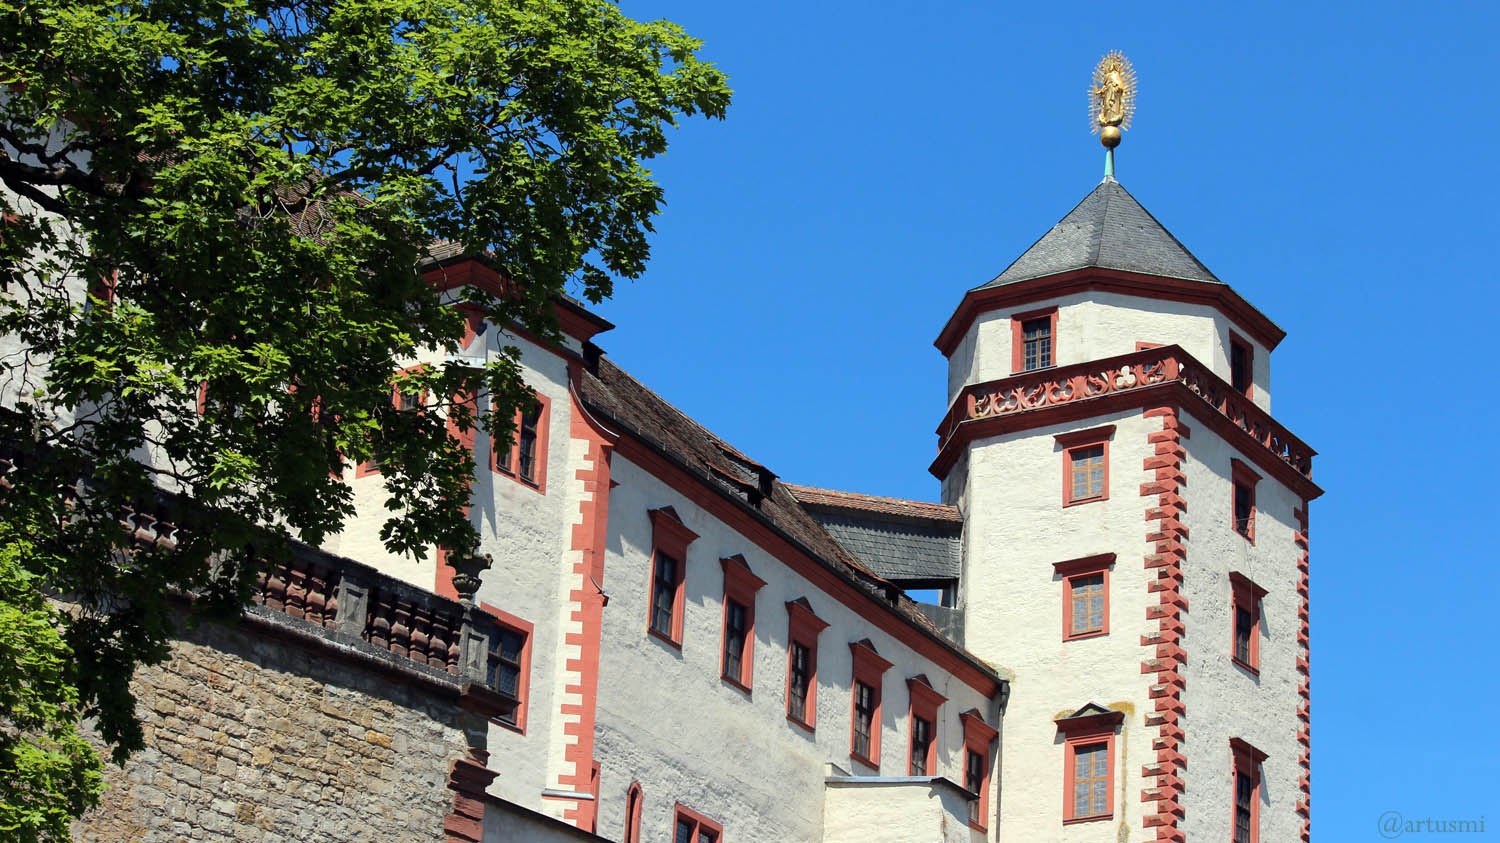 Marienturm der Festung Marienberg in Würzburg